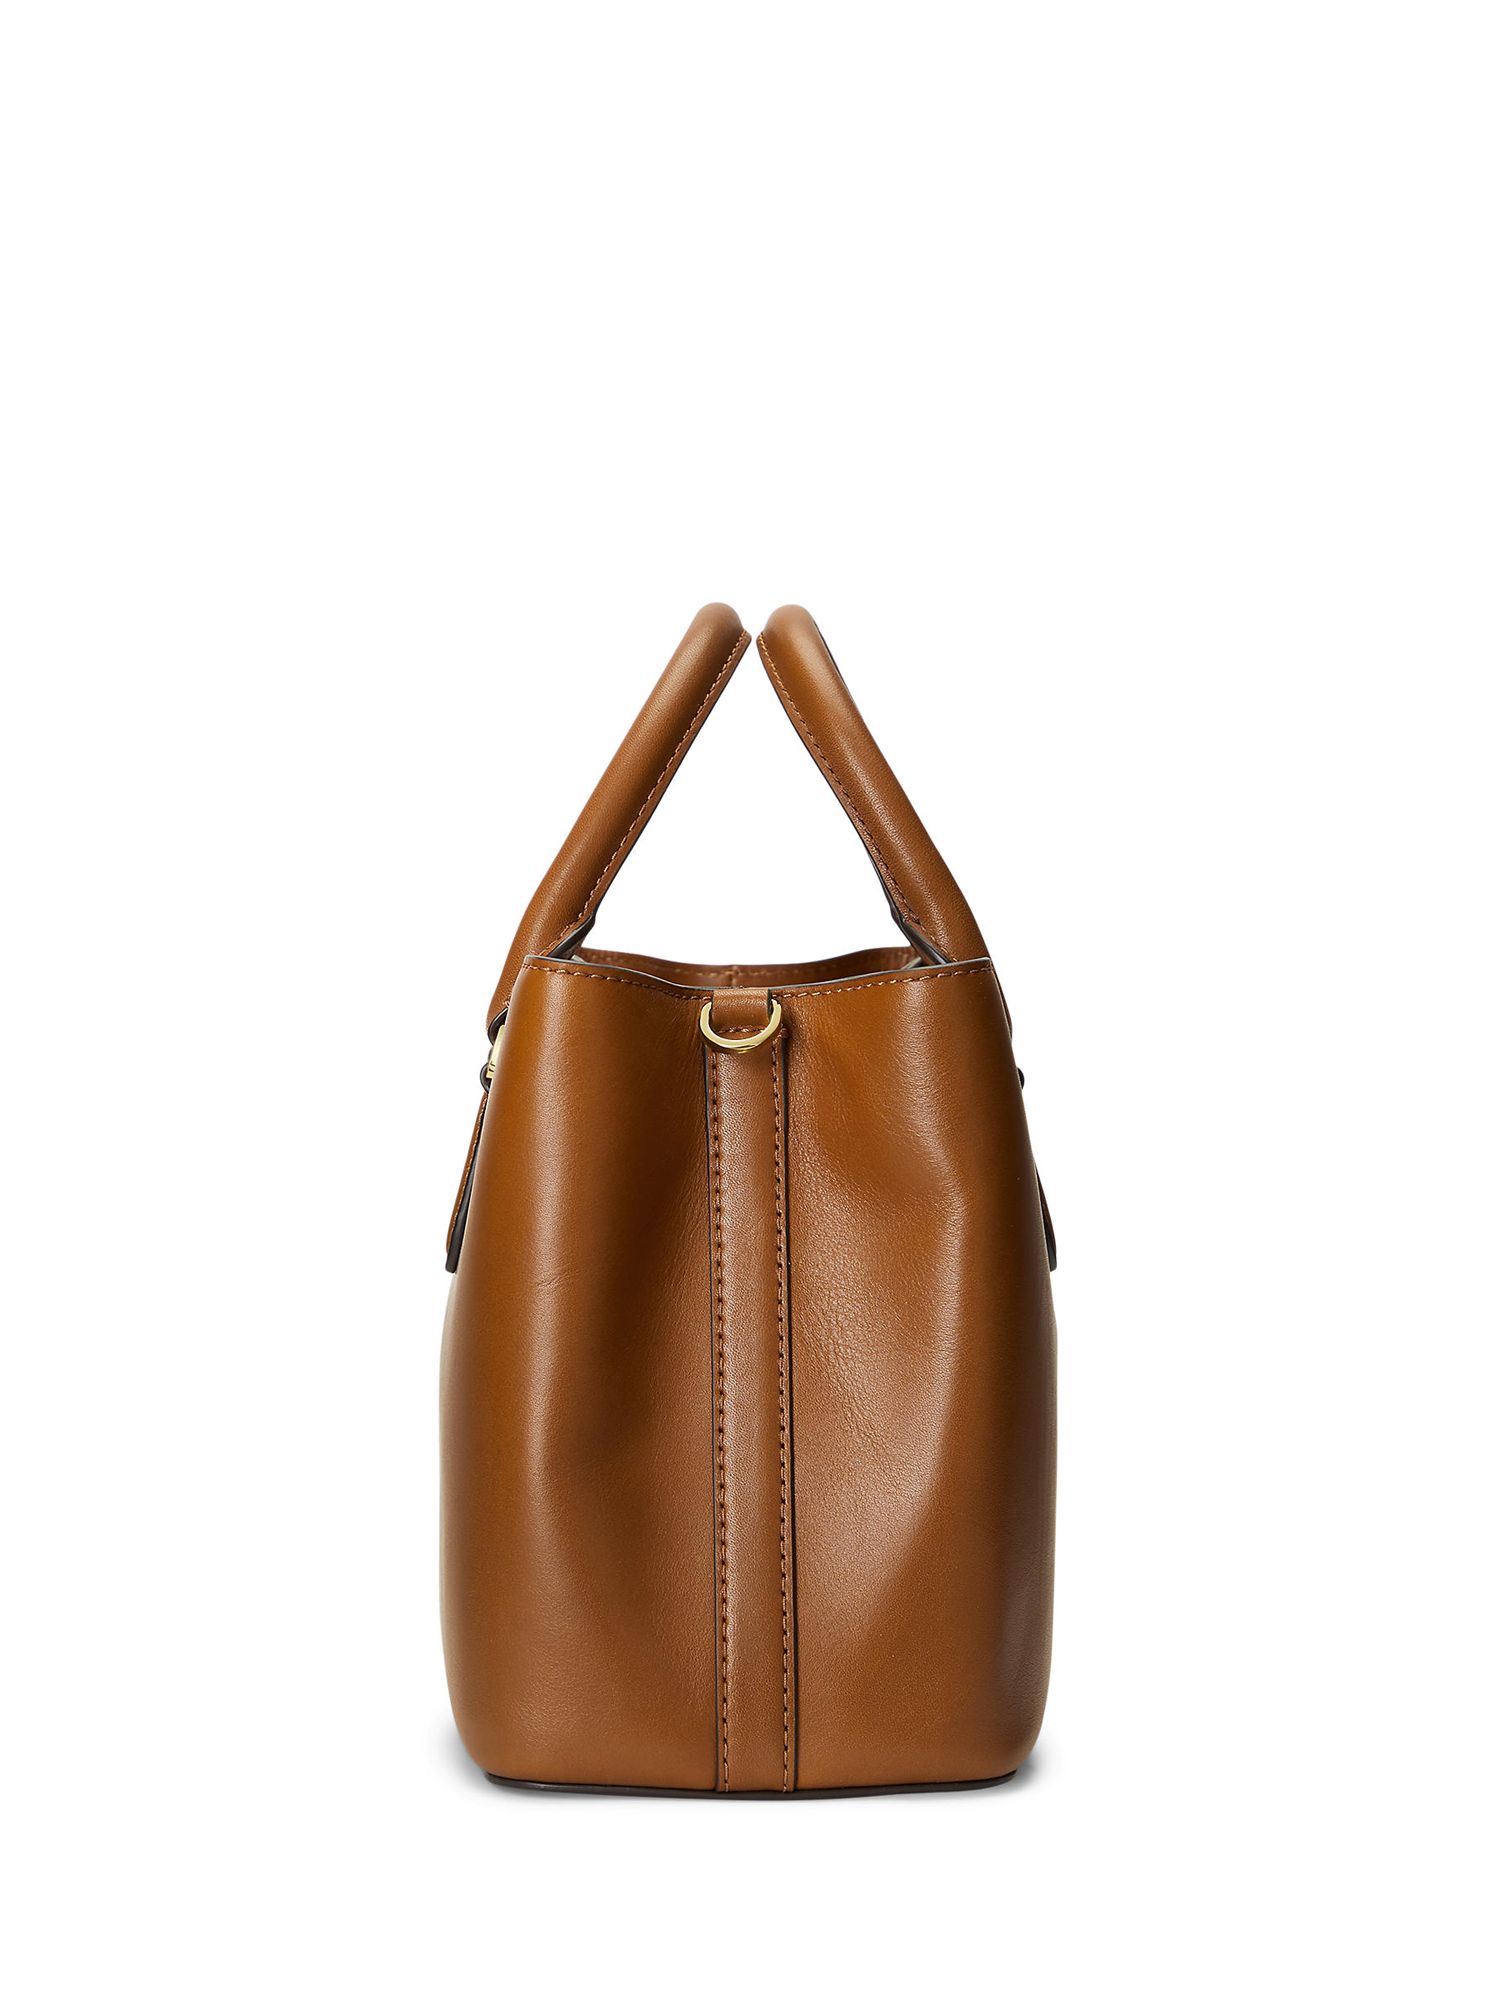 Lauren by Ralph Lauren Marcy Leather Bag in Brown